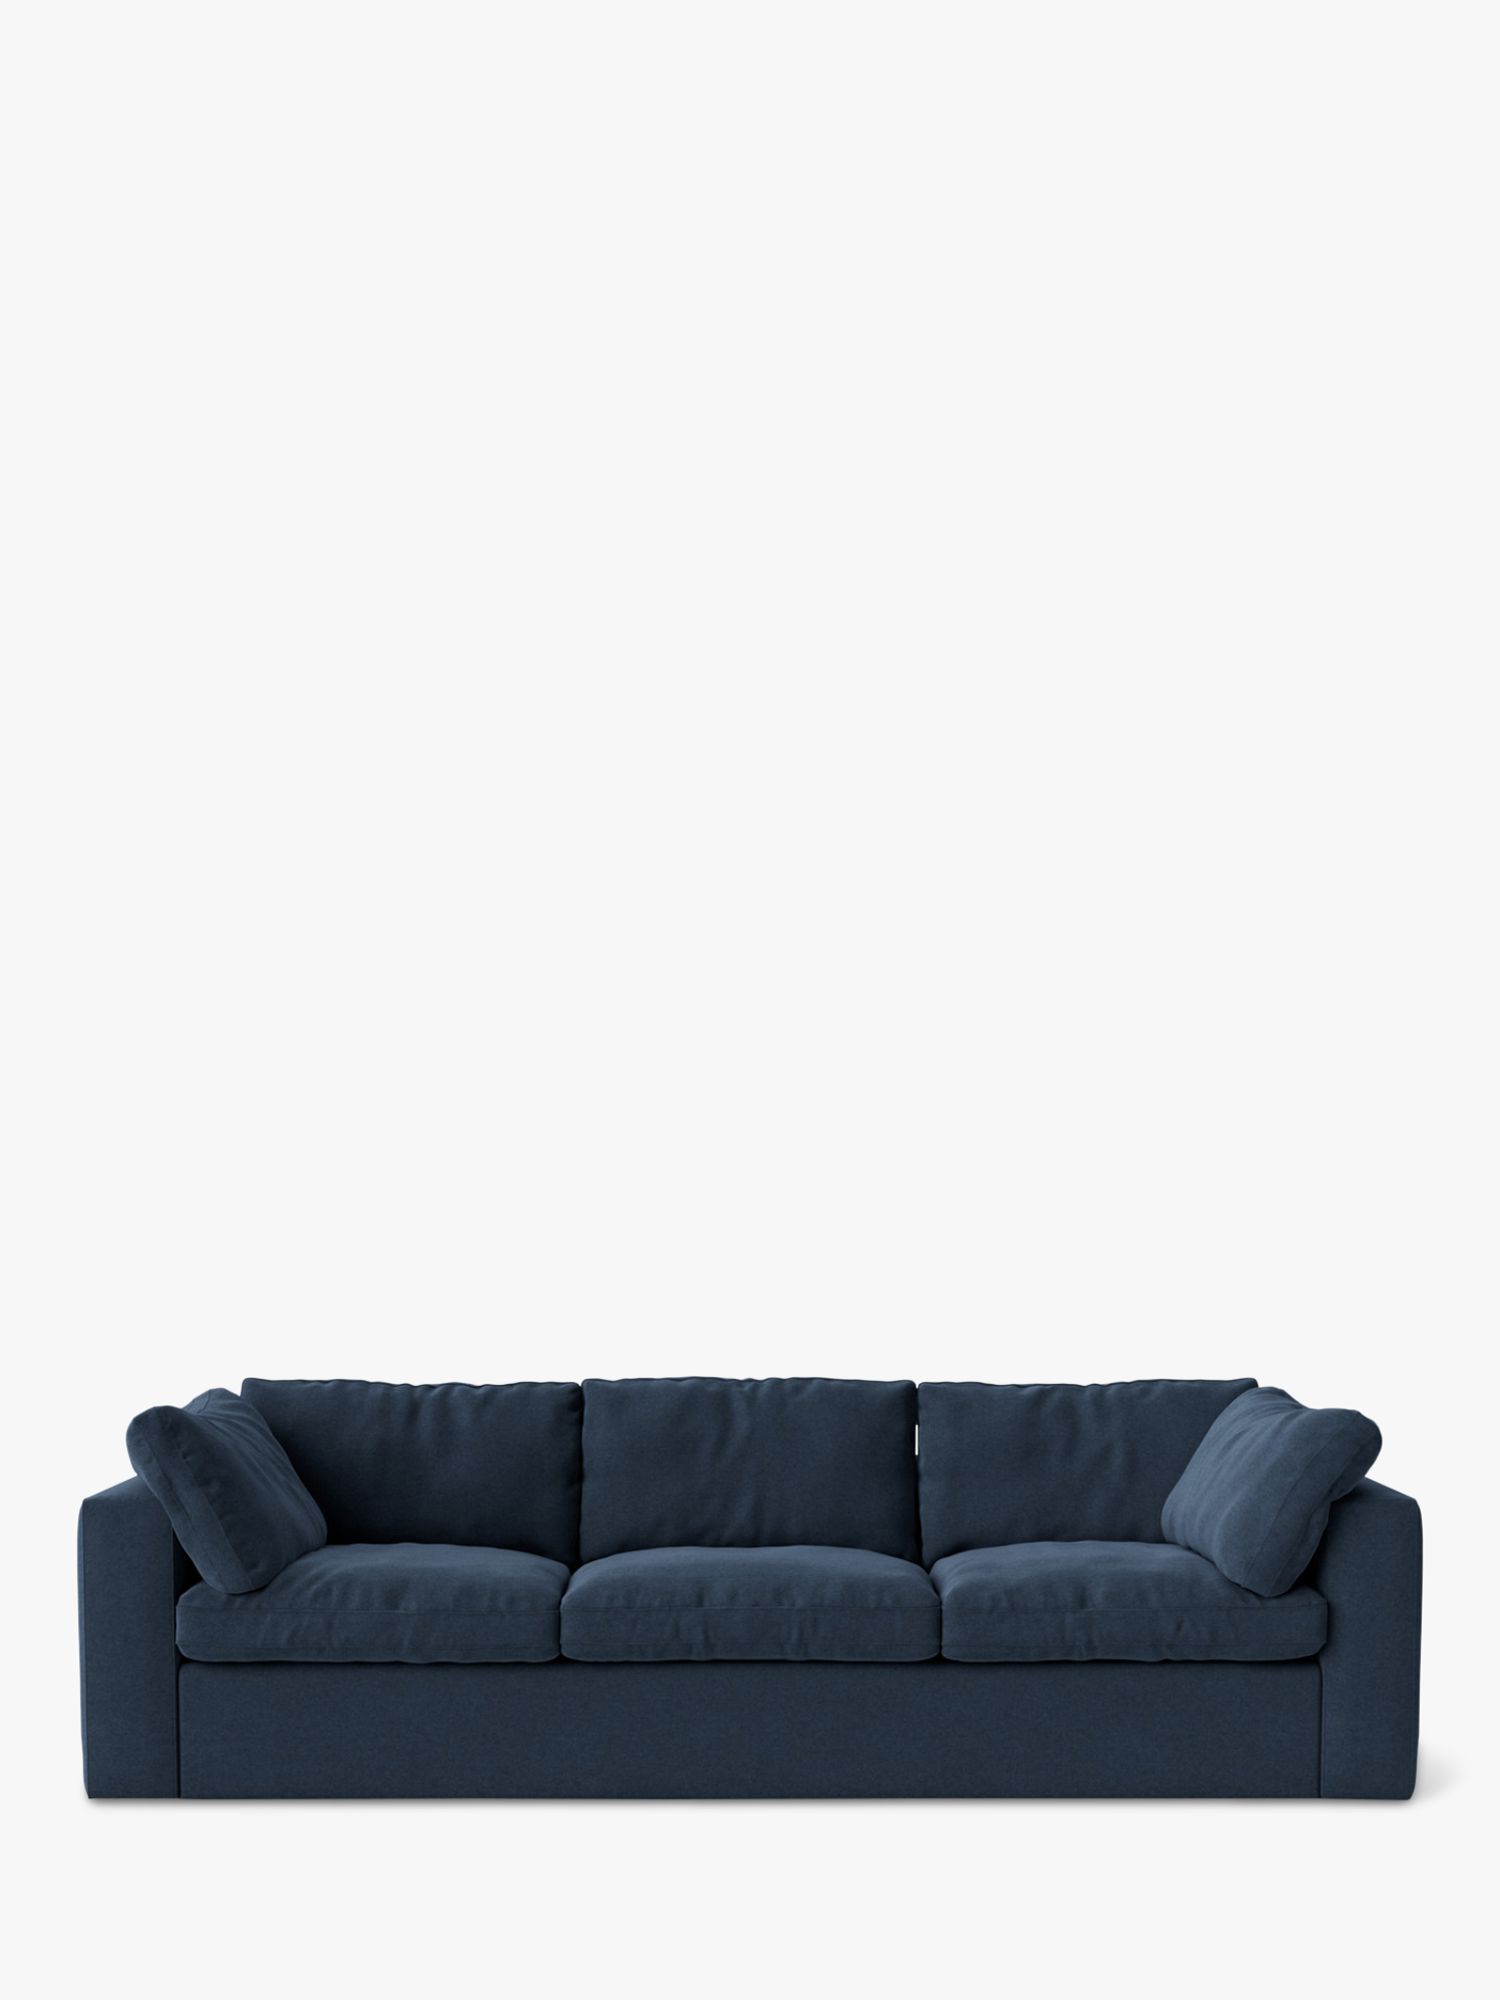 Seattle Range, Swoon Seattle Large 3 Seater Sofa, Smart Wool Indigo